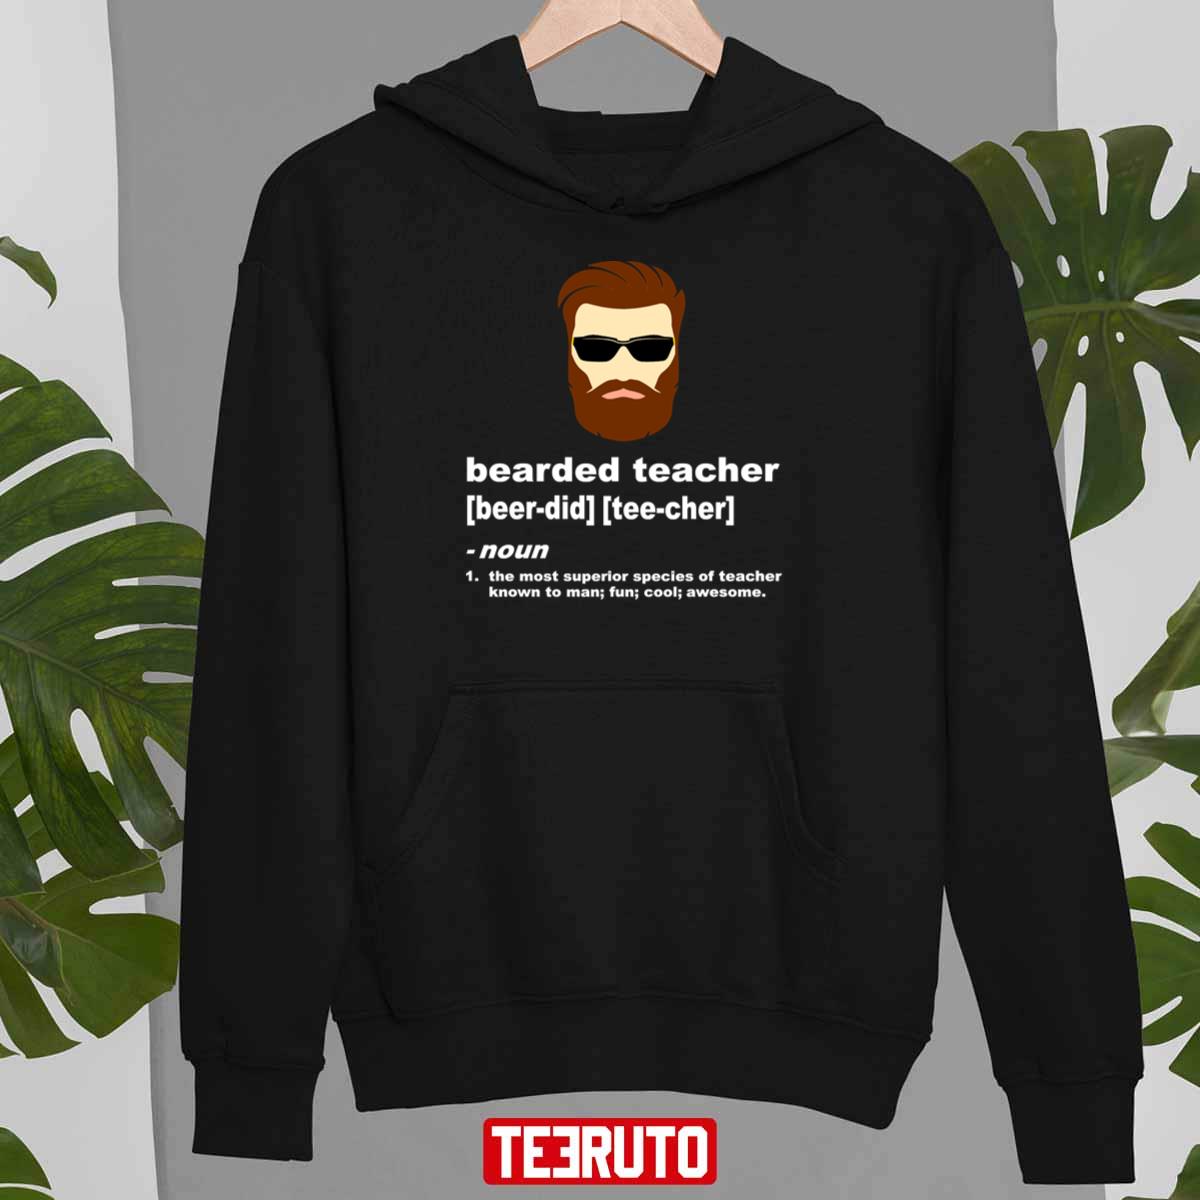 Funny Beard Teacher Shirt; Teacher Appreciation Gift For Men Unisex T-Shirt